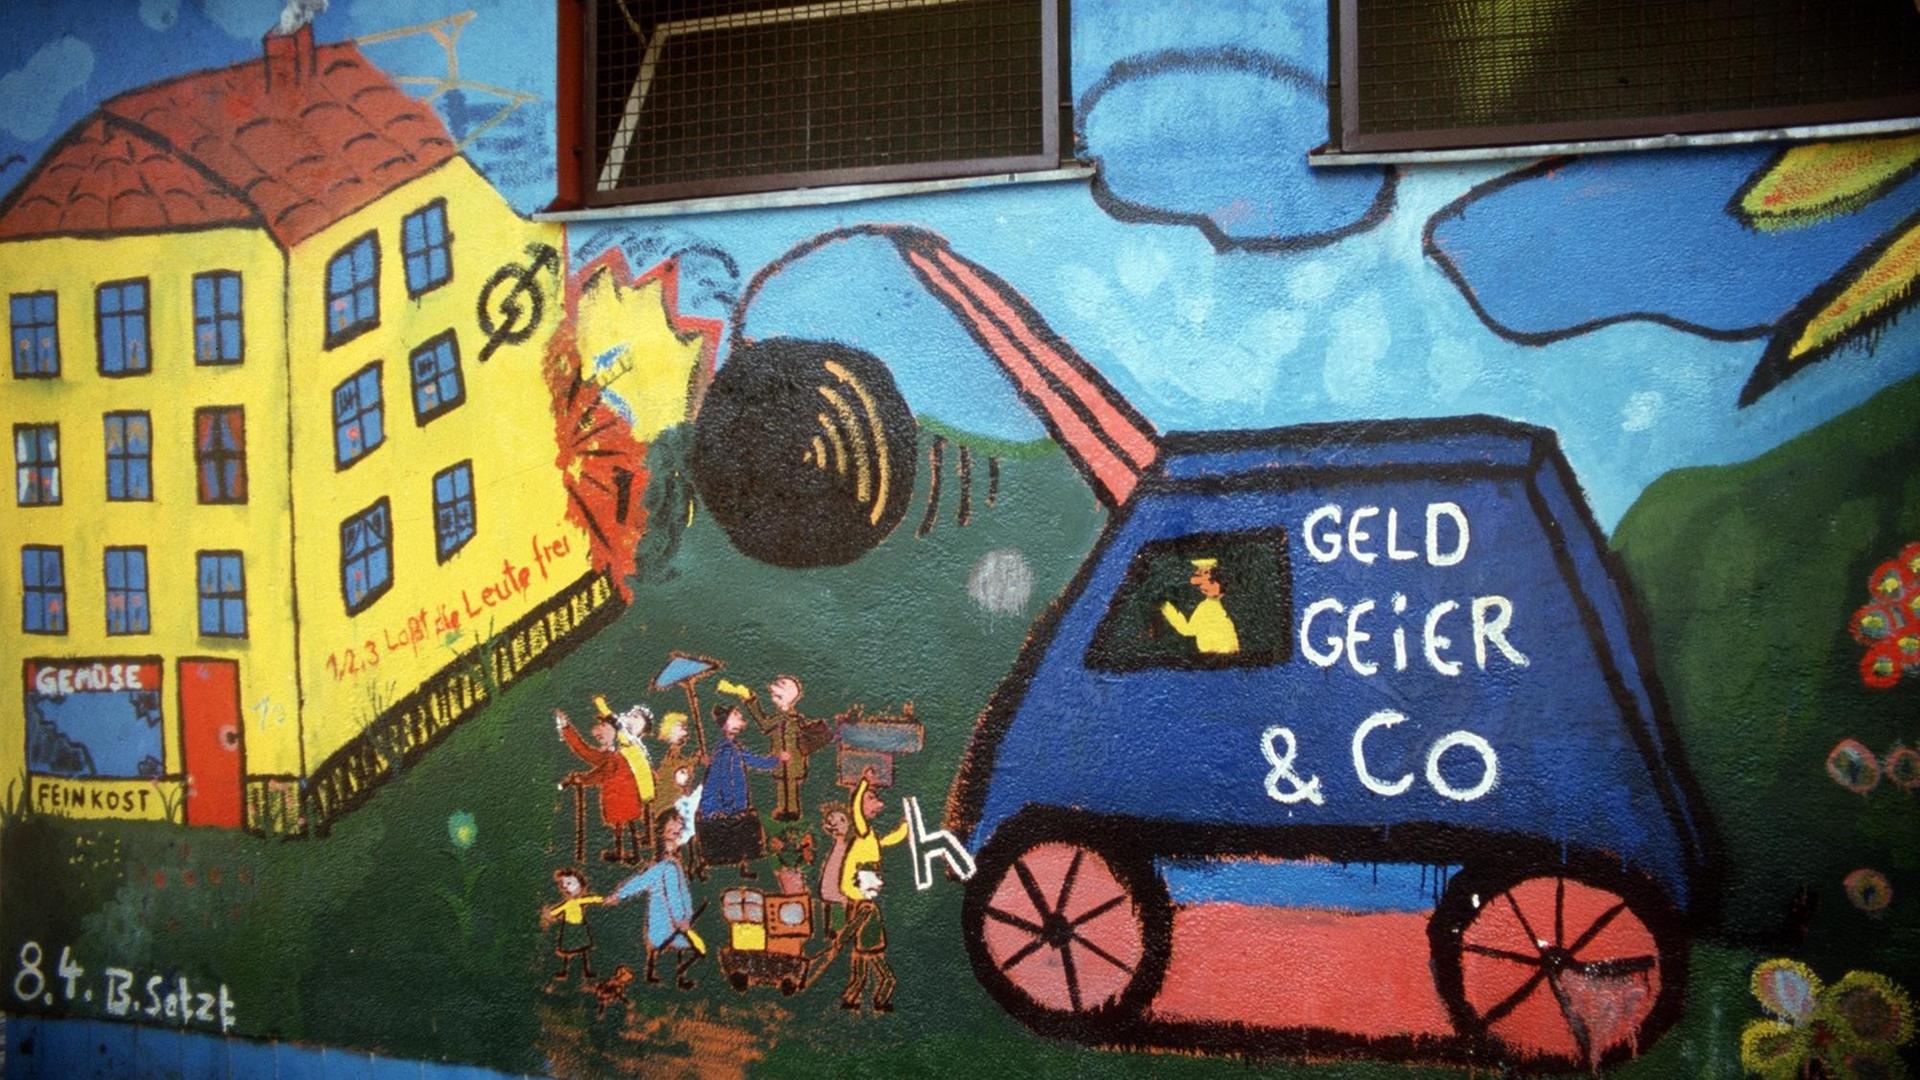 Wandmalereien und kämpferische Slogans an einem besetzten Haus in Berlin 1981